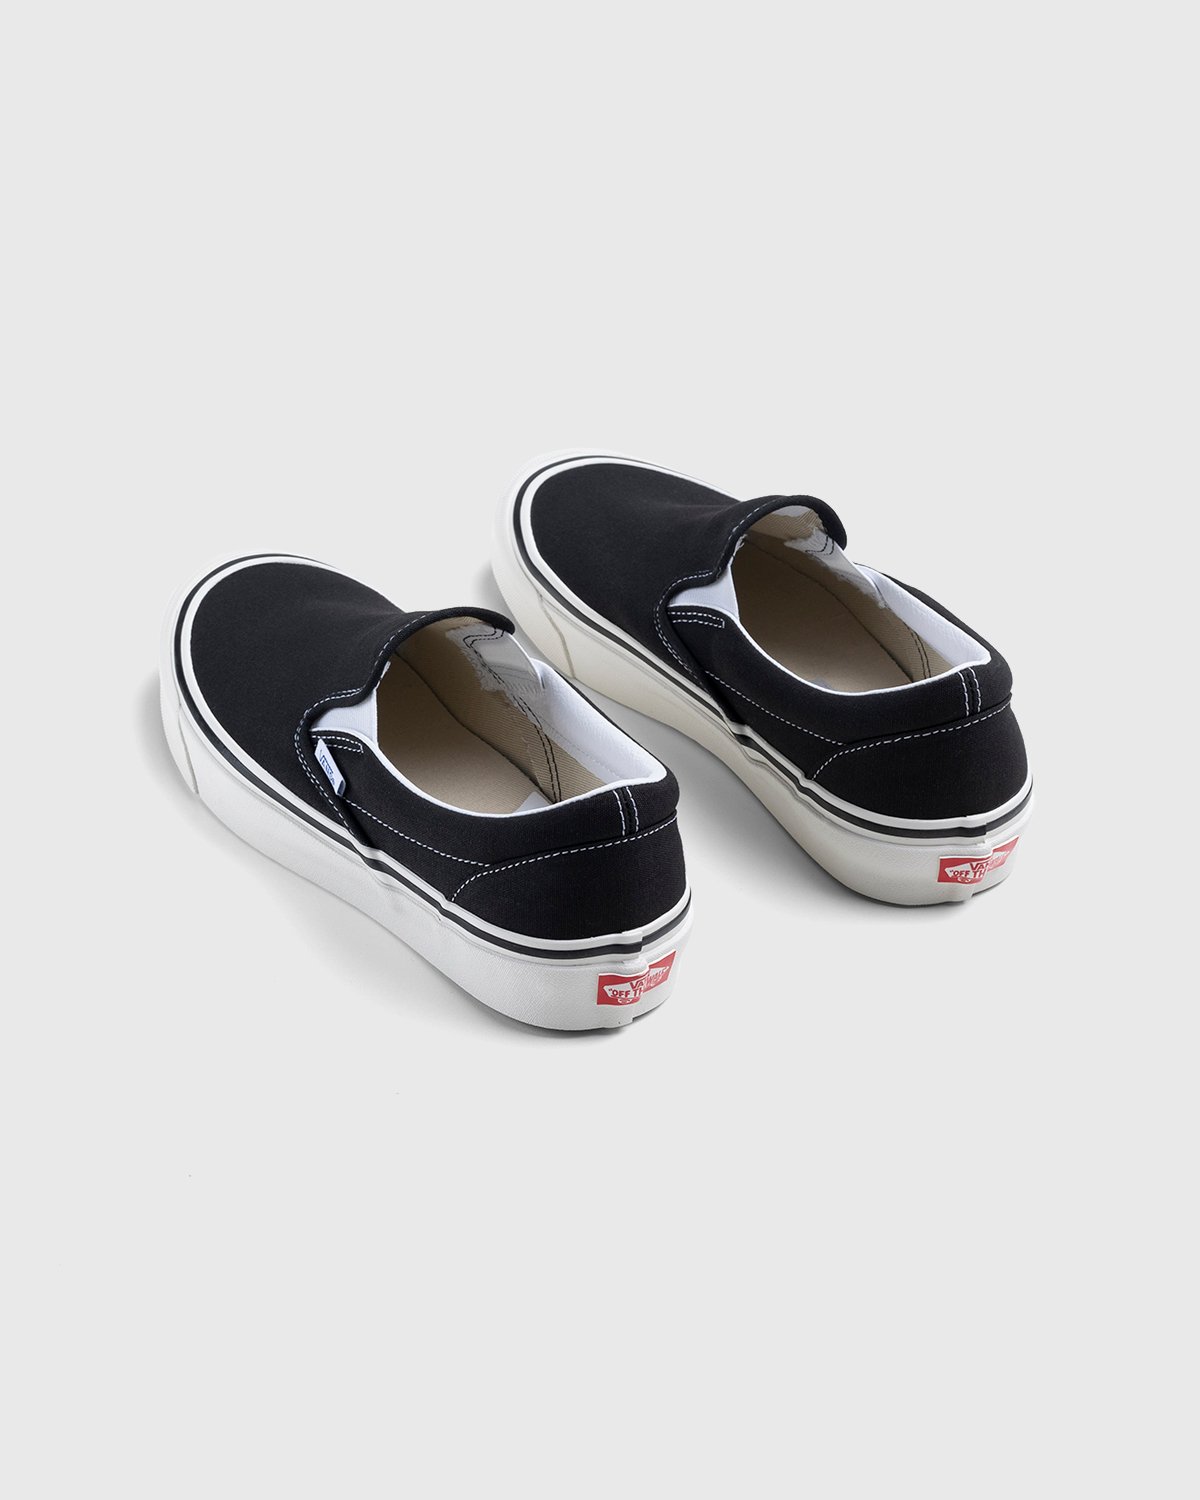 Vans - Anaheim Factory Classic Slip-On 98 DX OG Black - Footwear - Black - Image 4